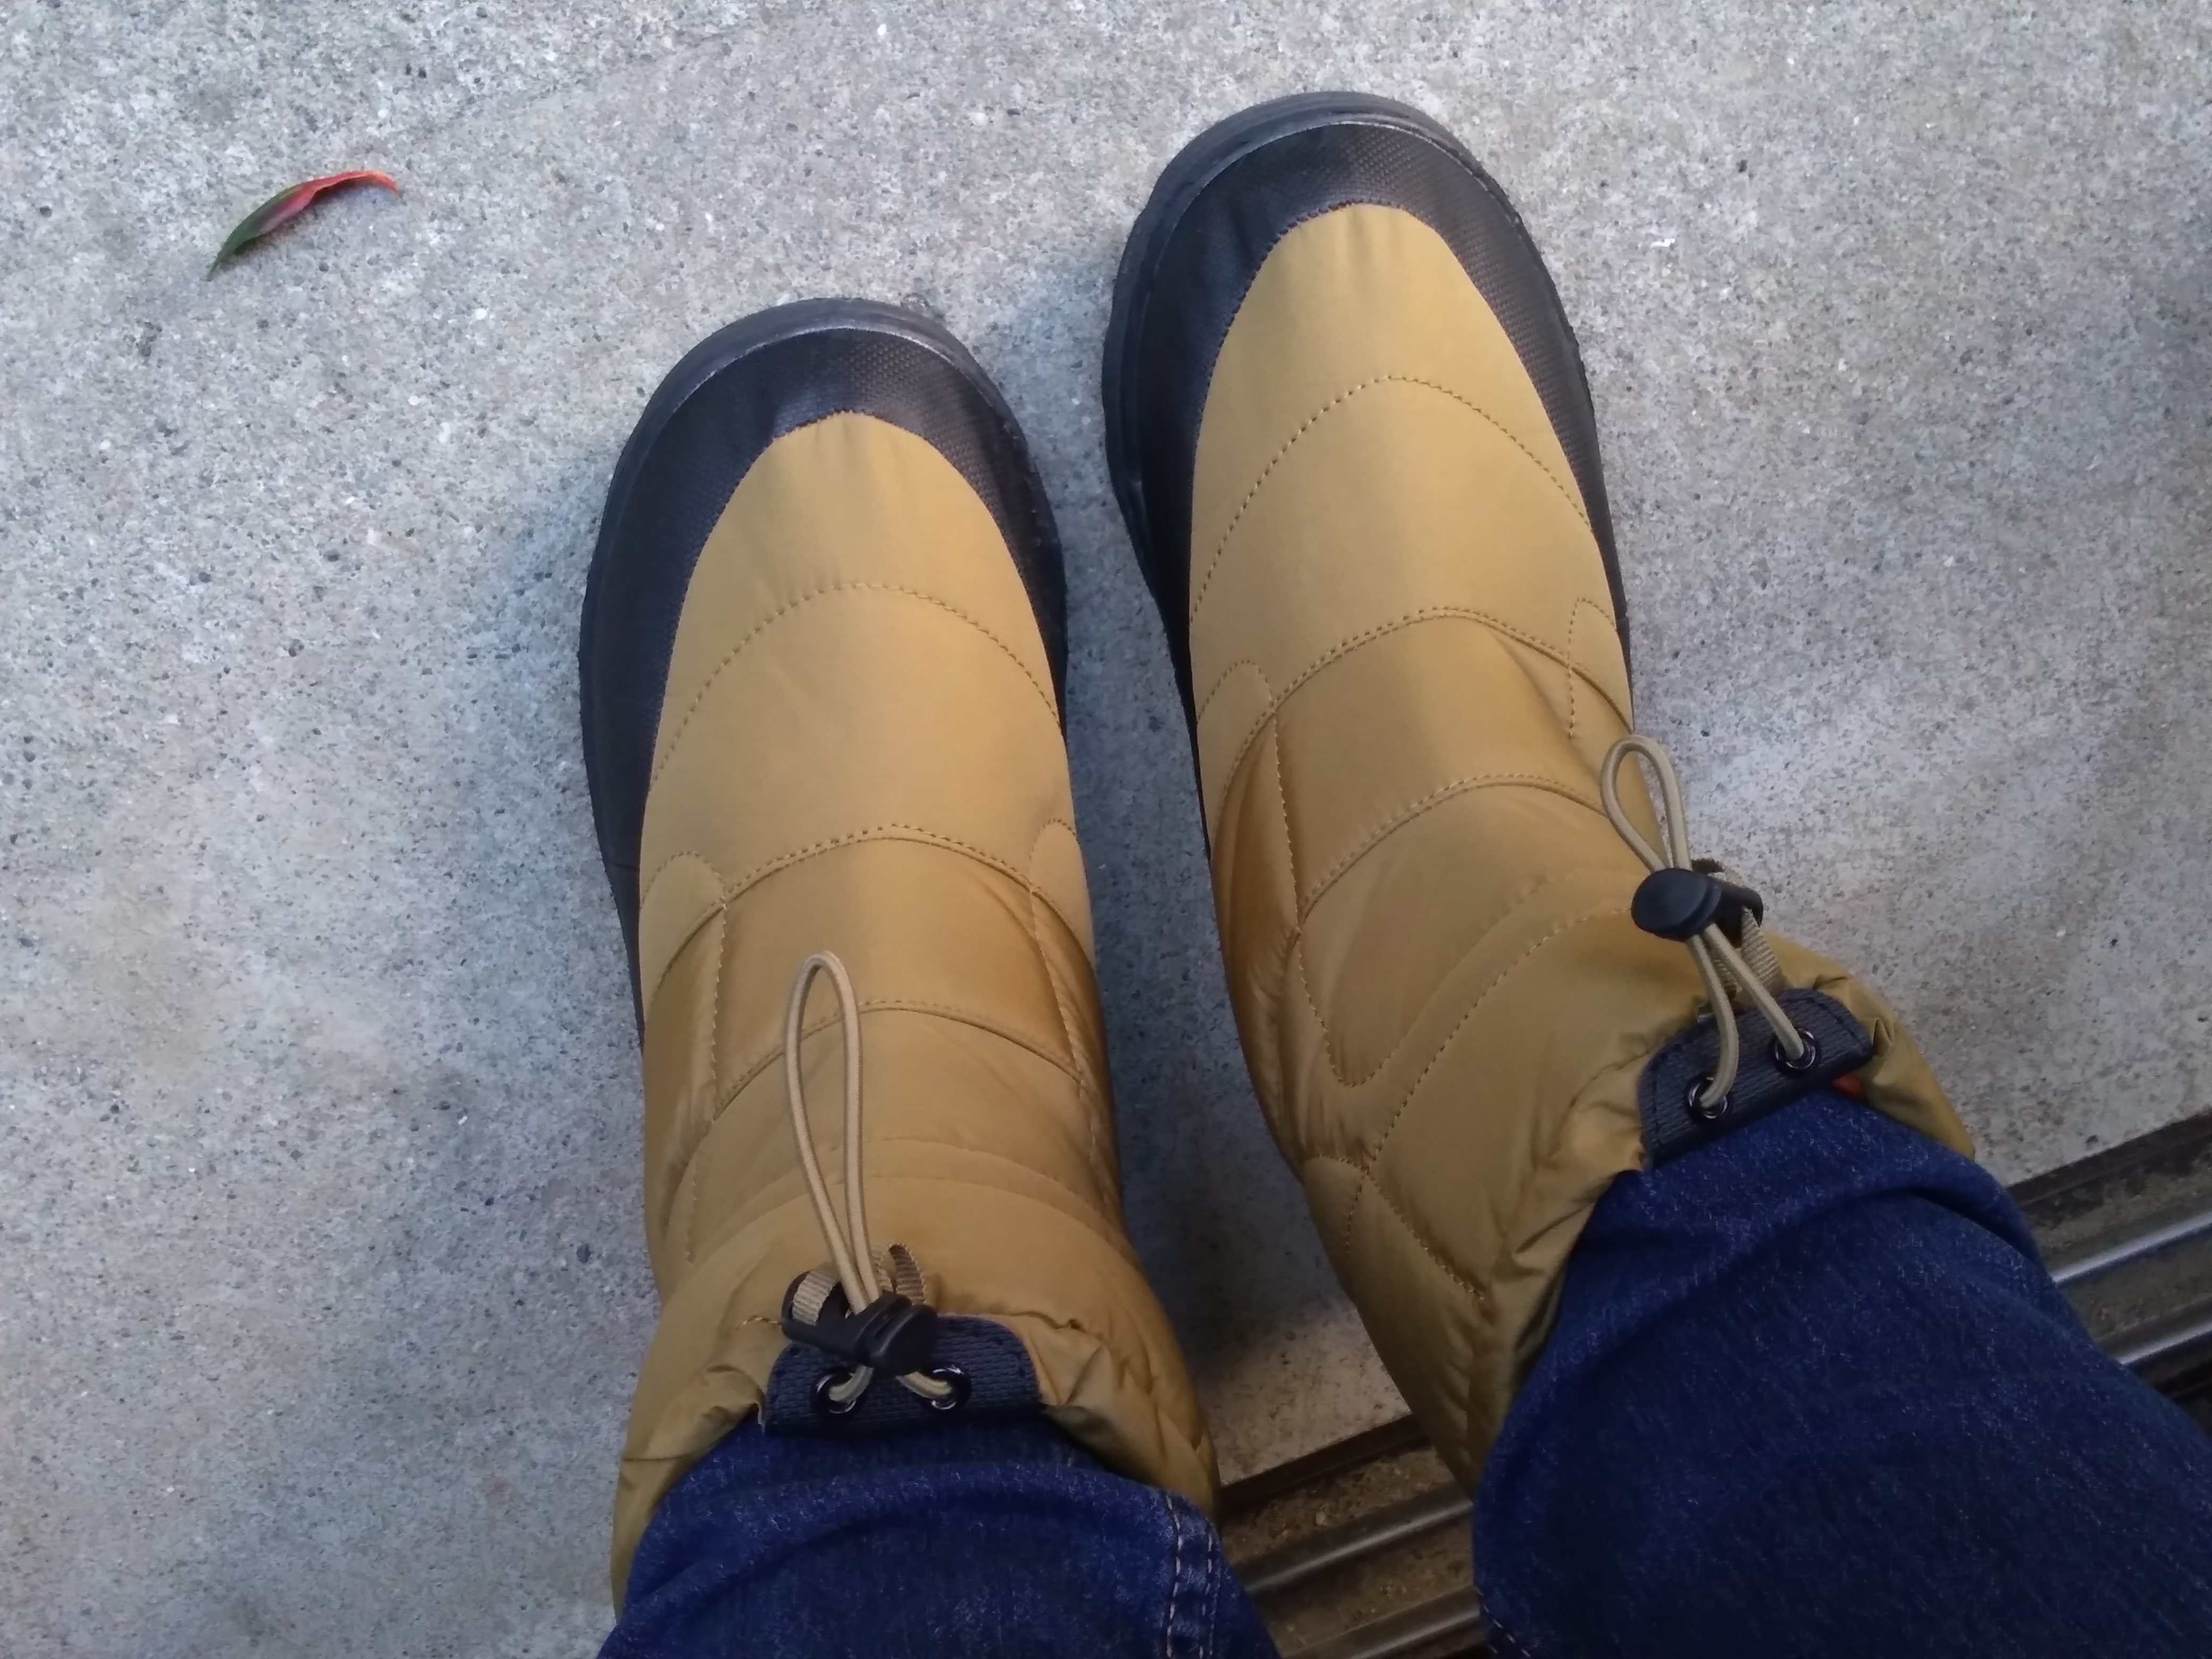 ワークマンの 1900円のケベック靴 レビュー ワークマン女子におすすめ 暖かくて滑らなくて最高